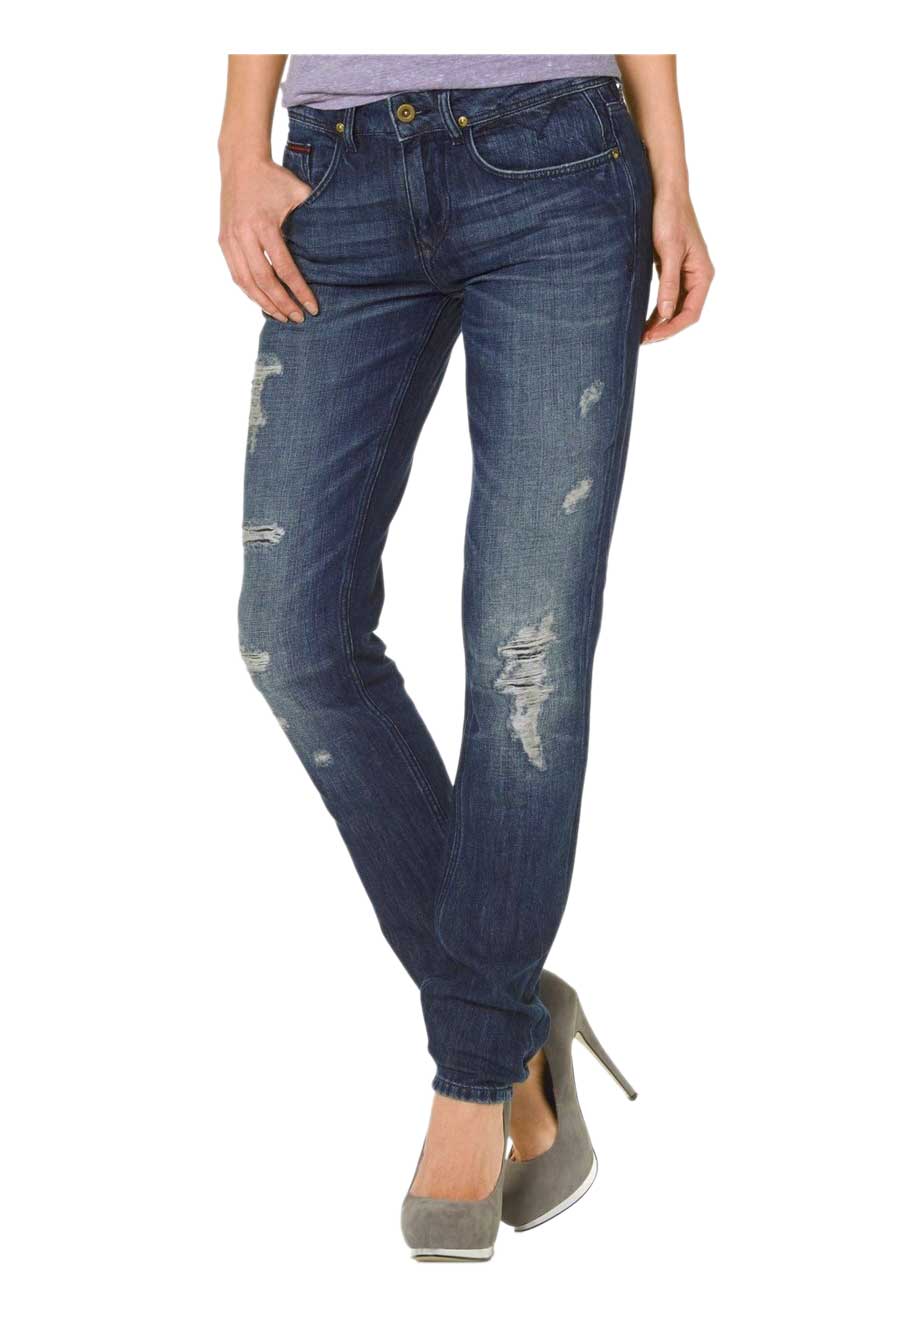 Hilfiger Denim Damen Marken-Jeans, blau used